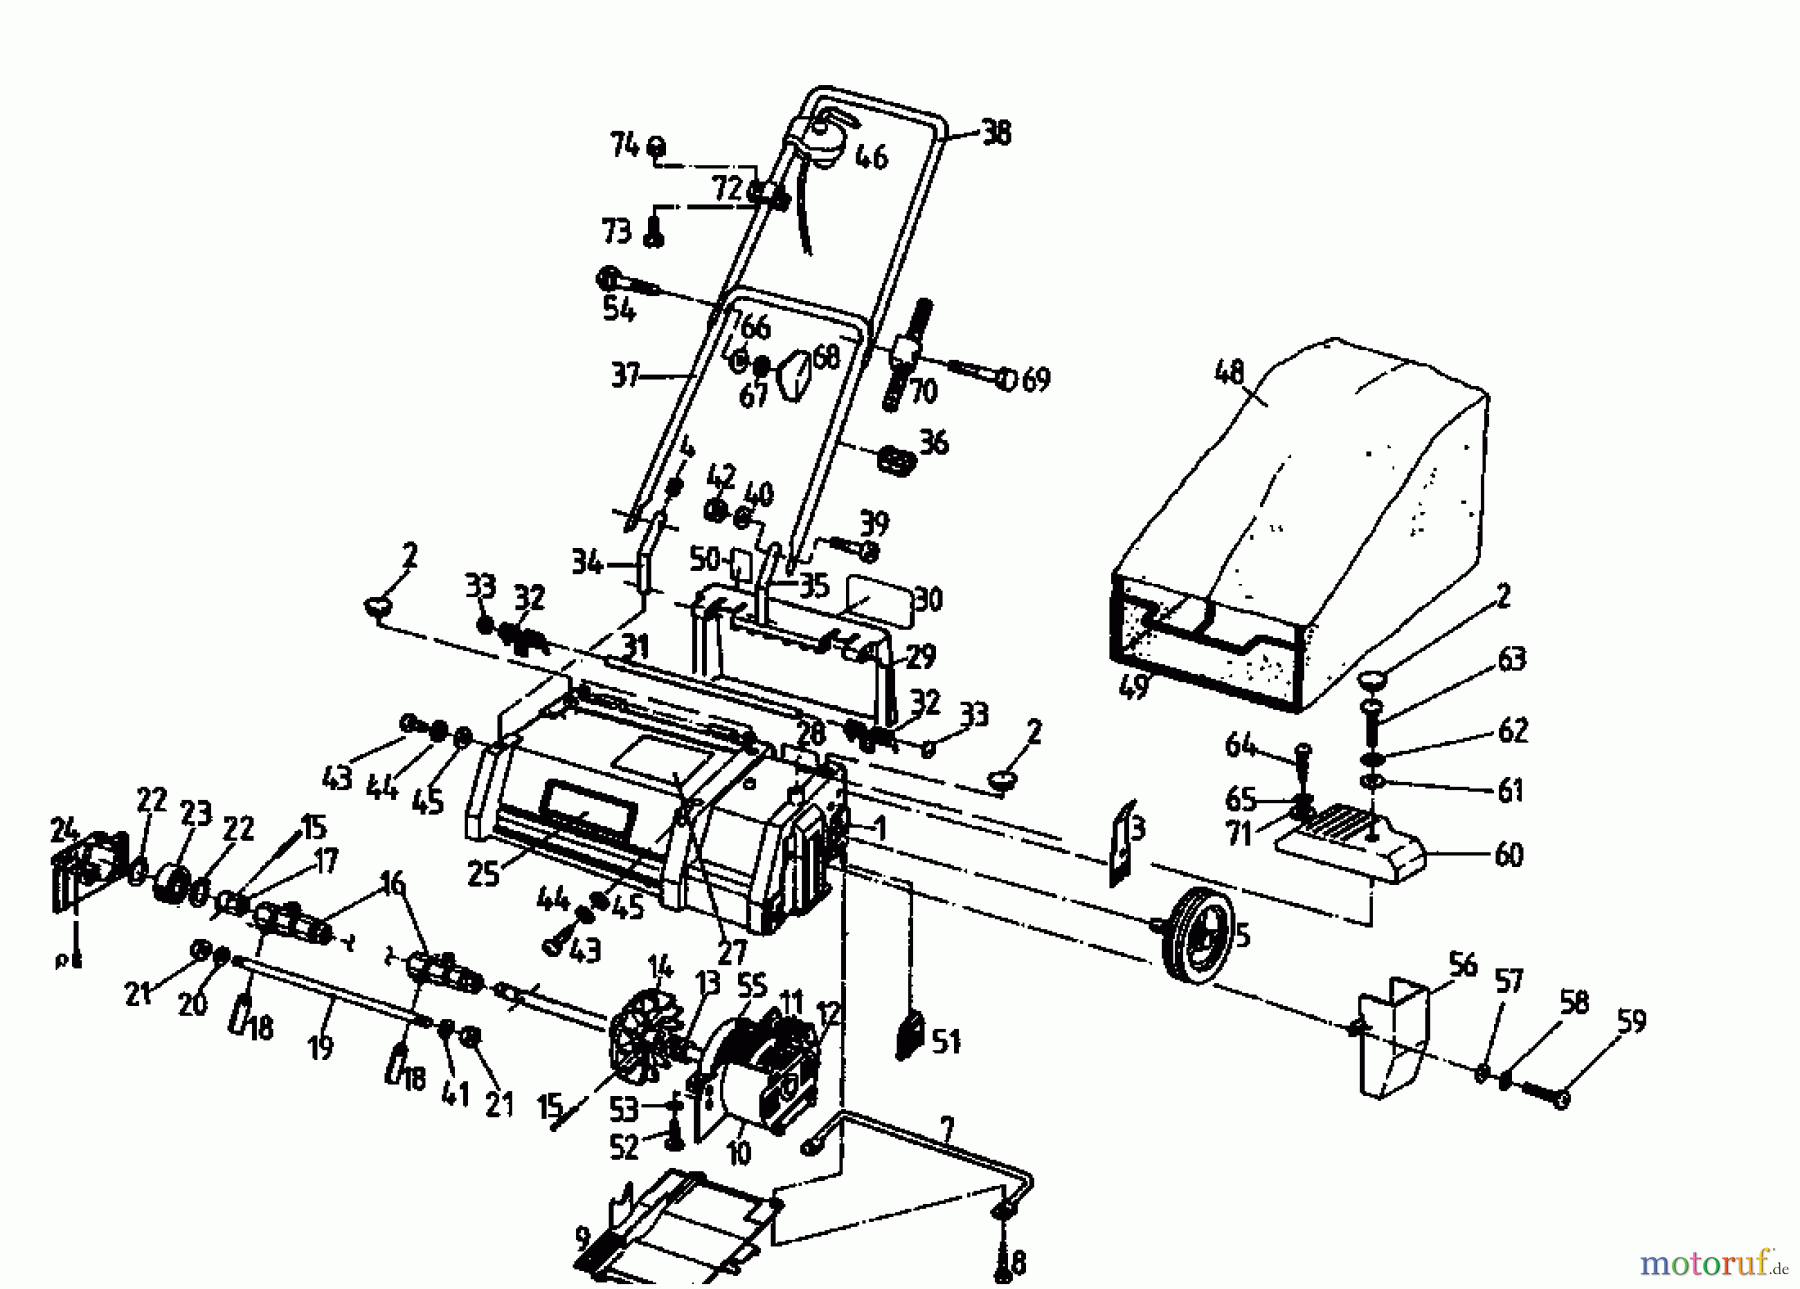  Golf Scarificateur électrique 133 VE 02826.04  (1995) Machine de base